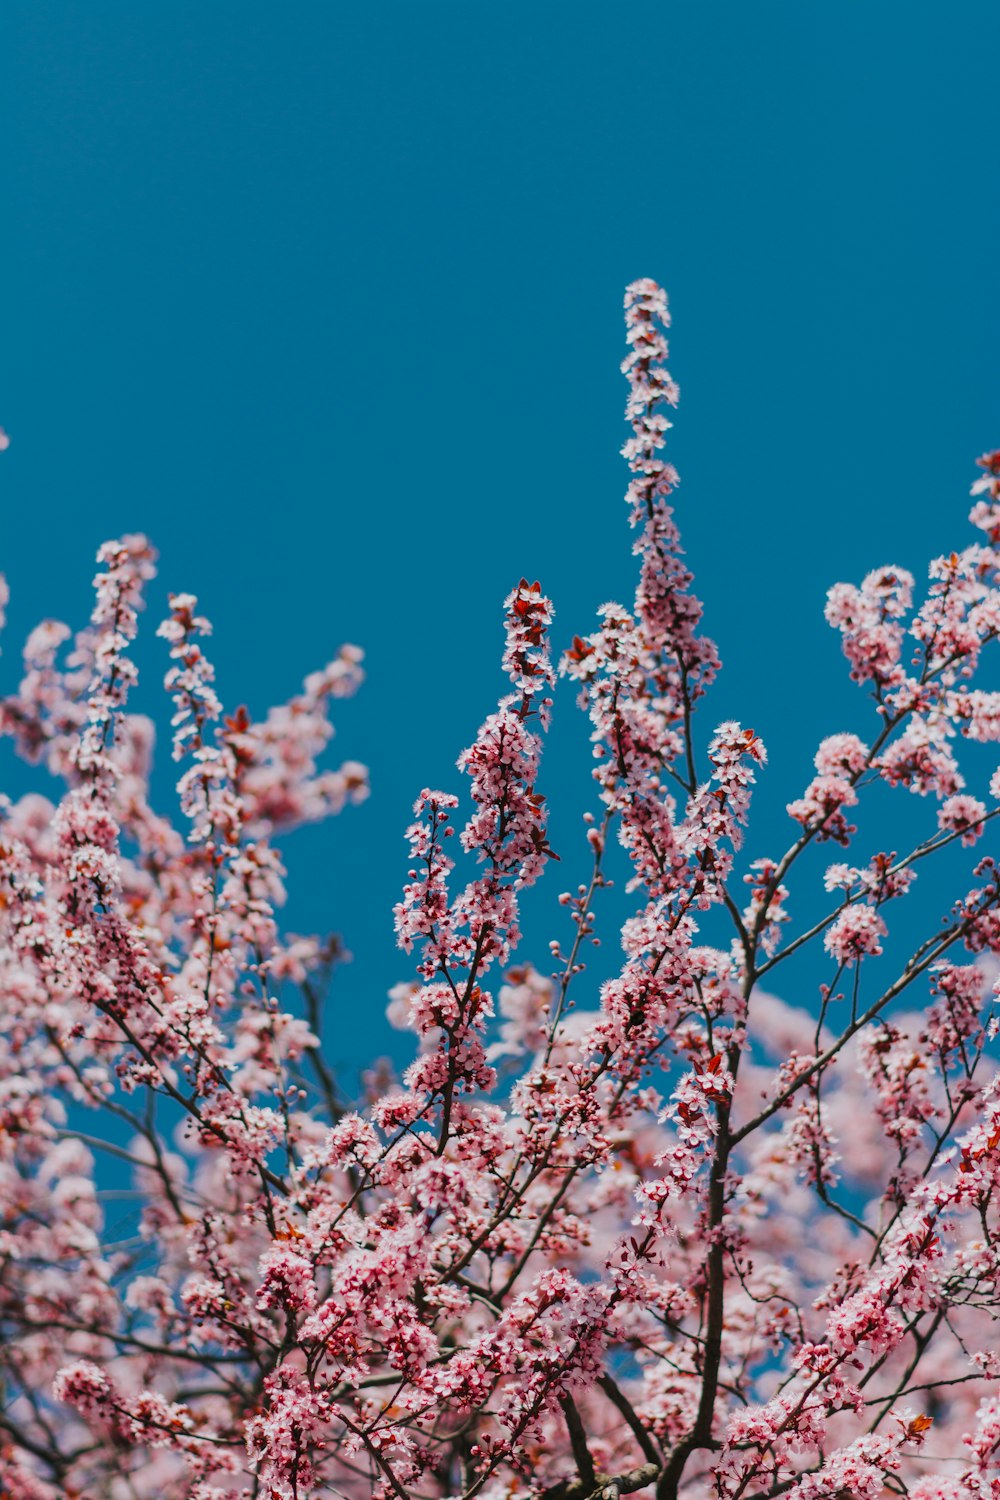 albero di ciliegio rosa in fiore sotto chiaro durante il giorno